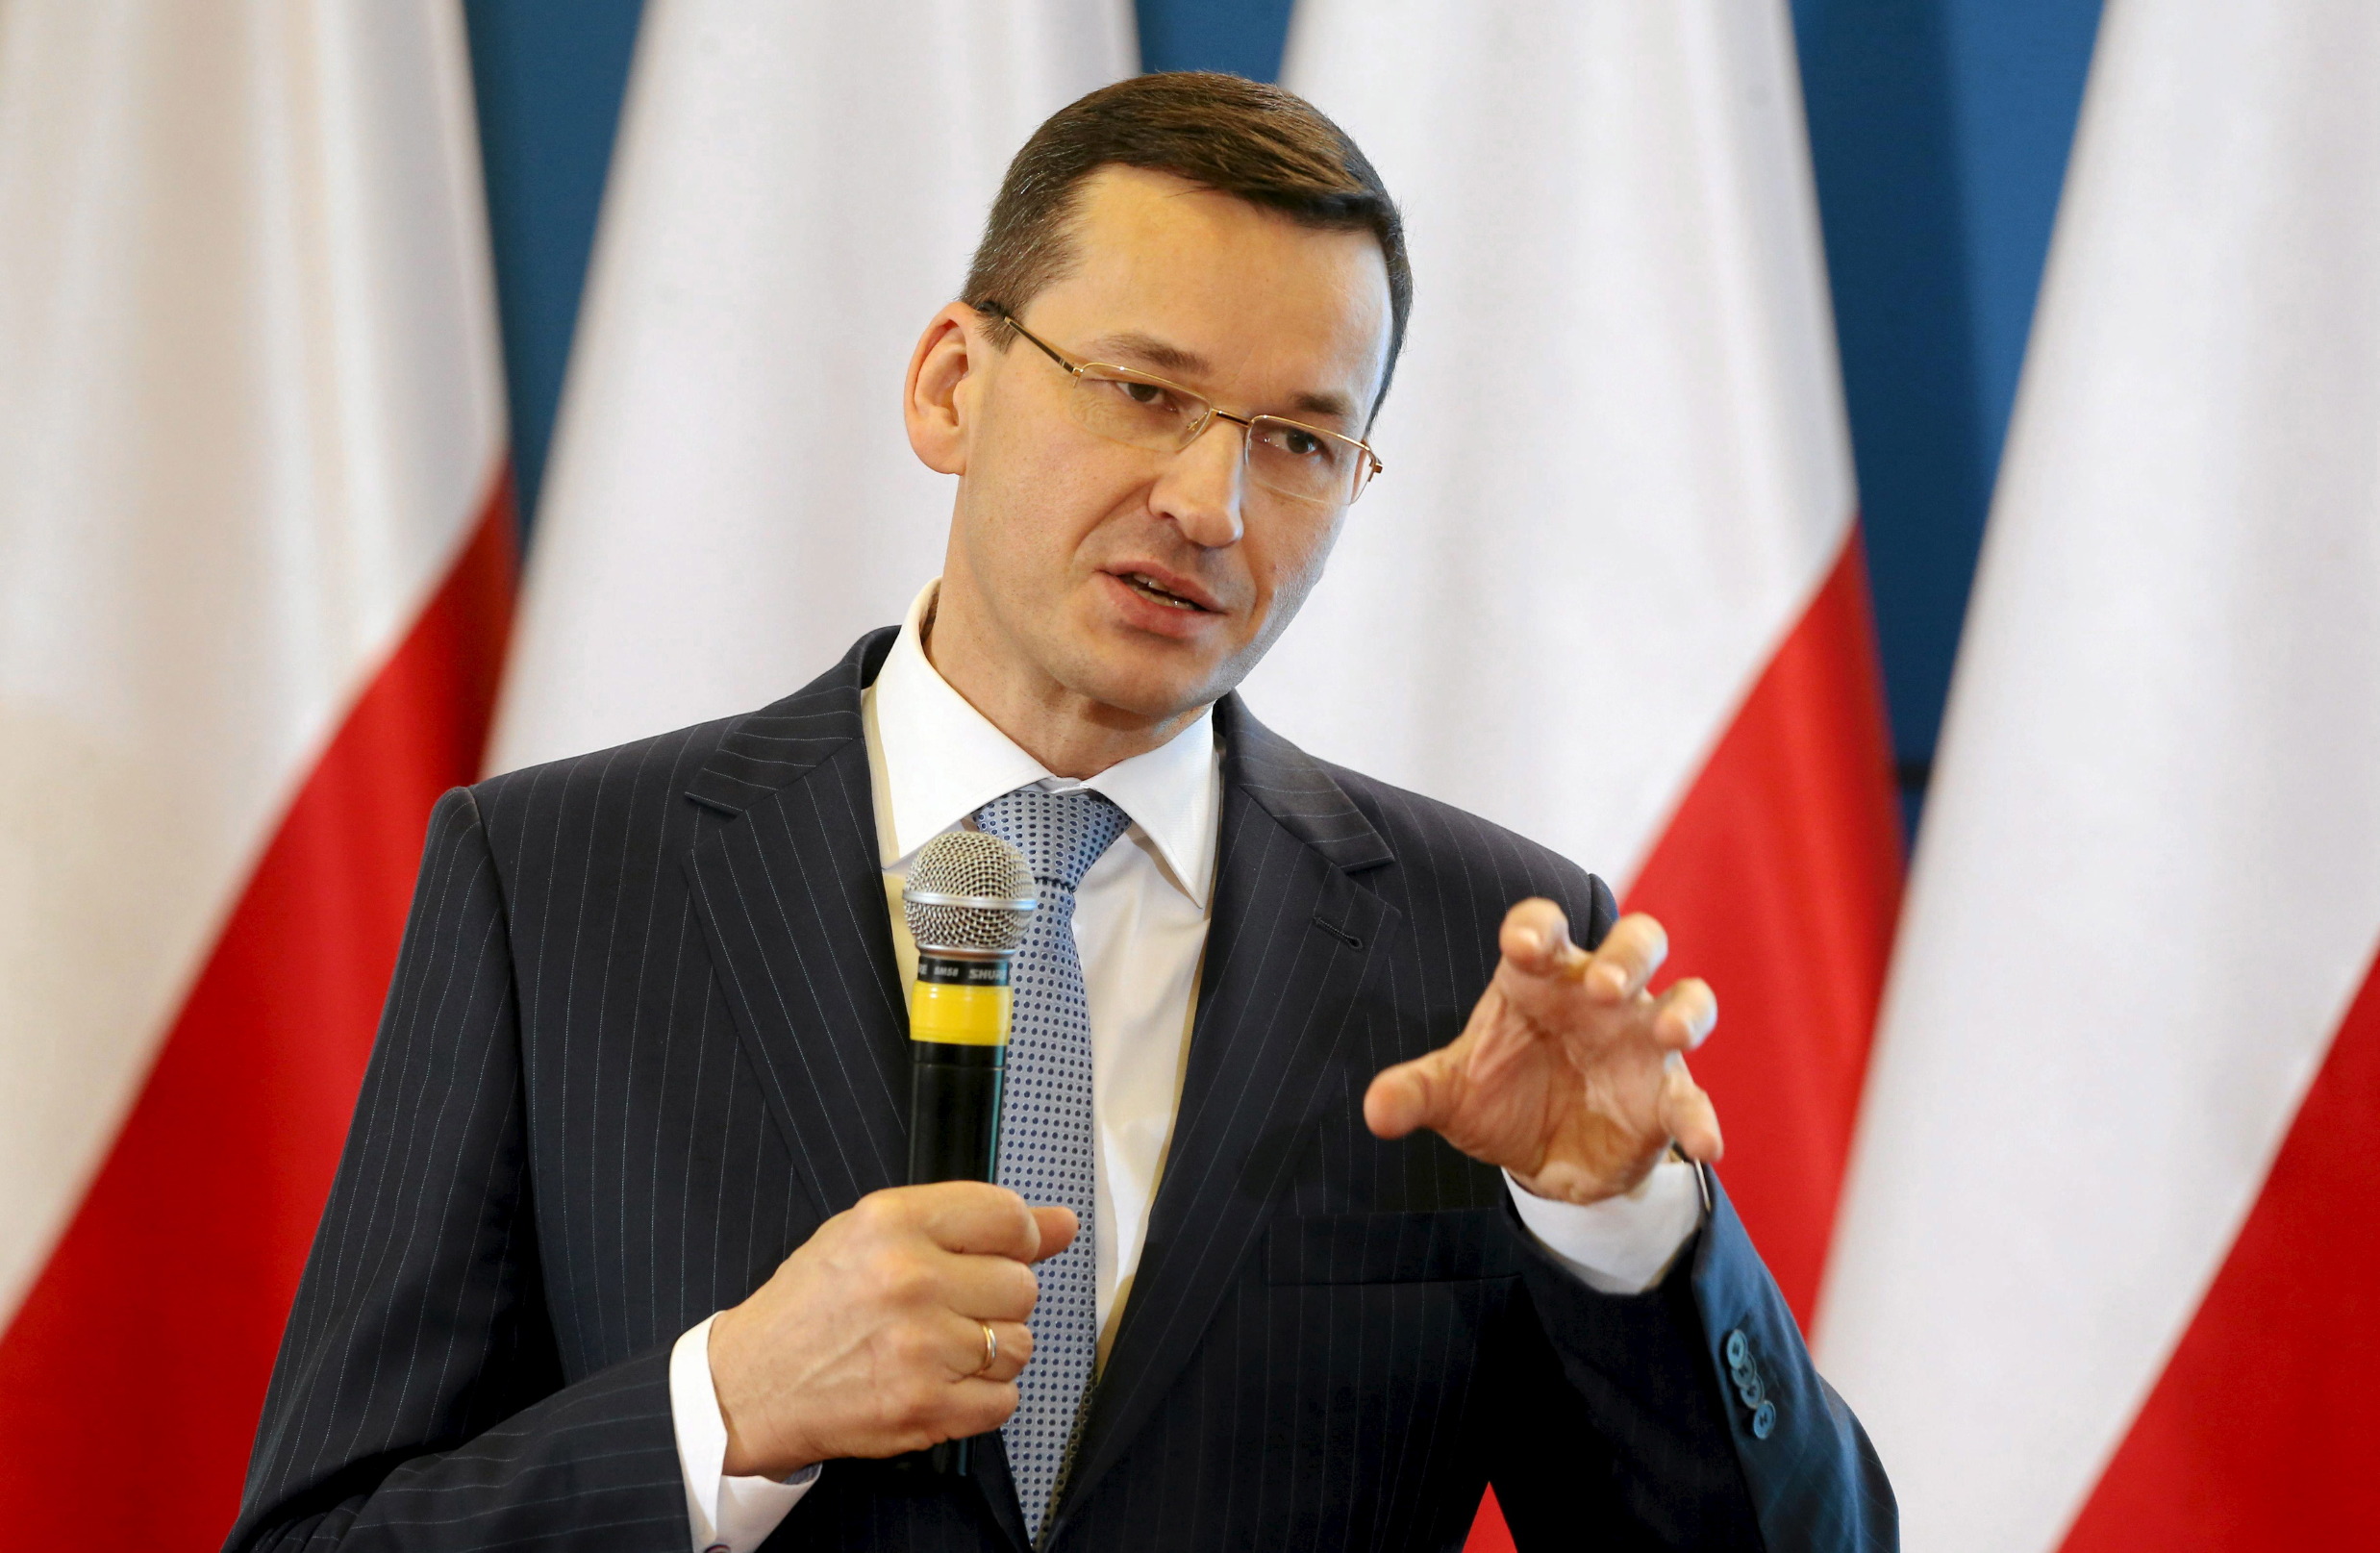 Polish PM Mateusz Morawiecki 